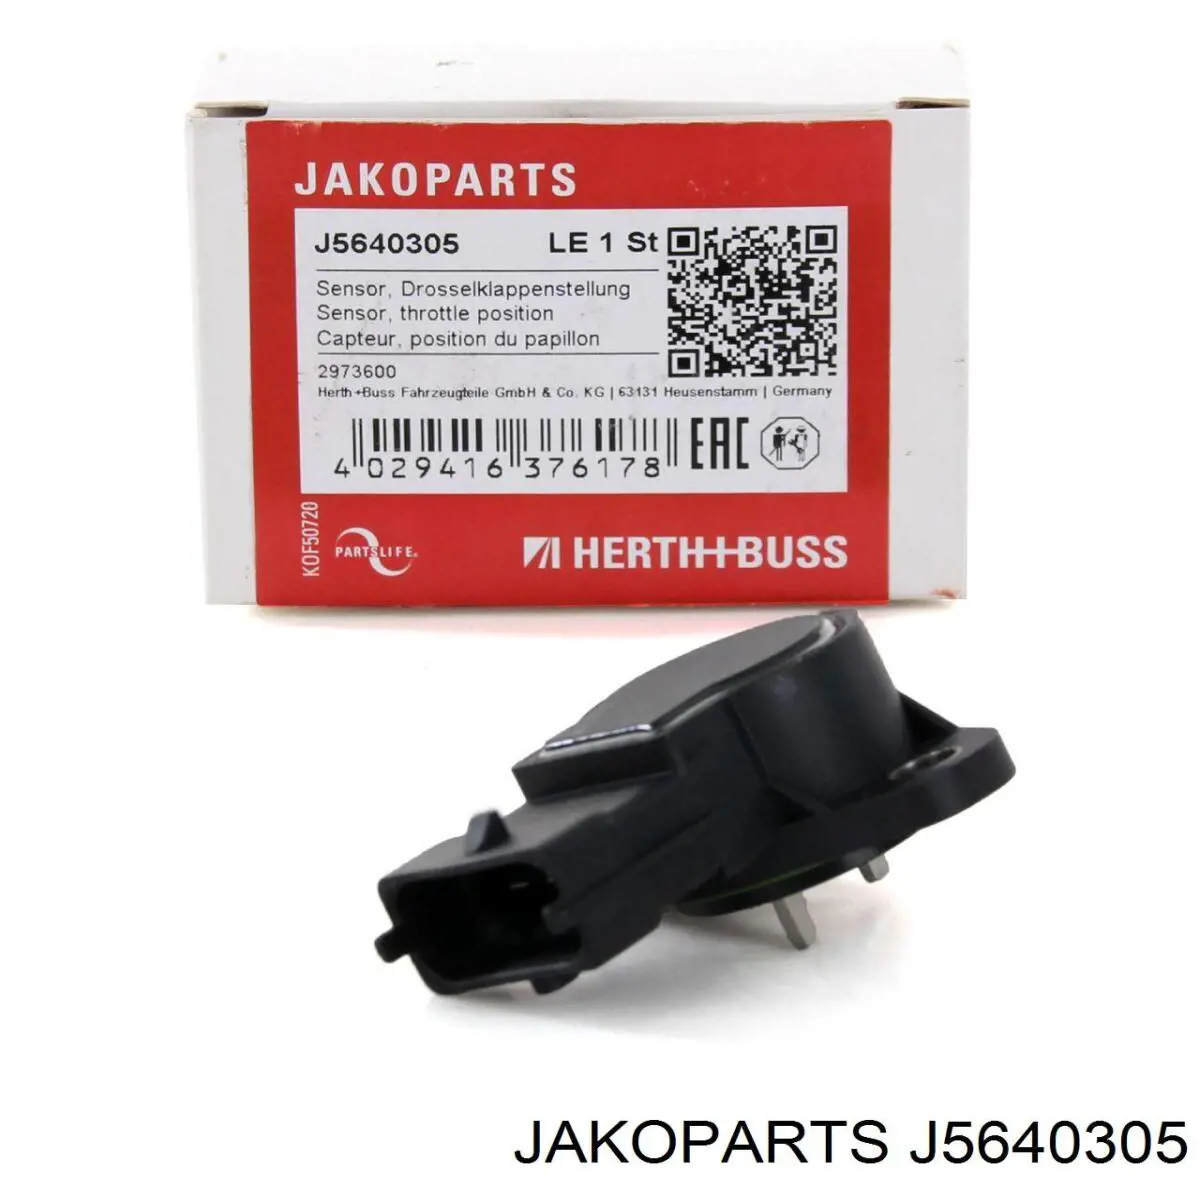 J5640305 Jakoparts sensor de posição da válvula de borboleta (potenciômetro)